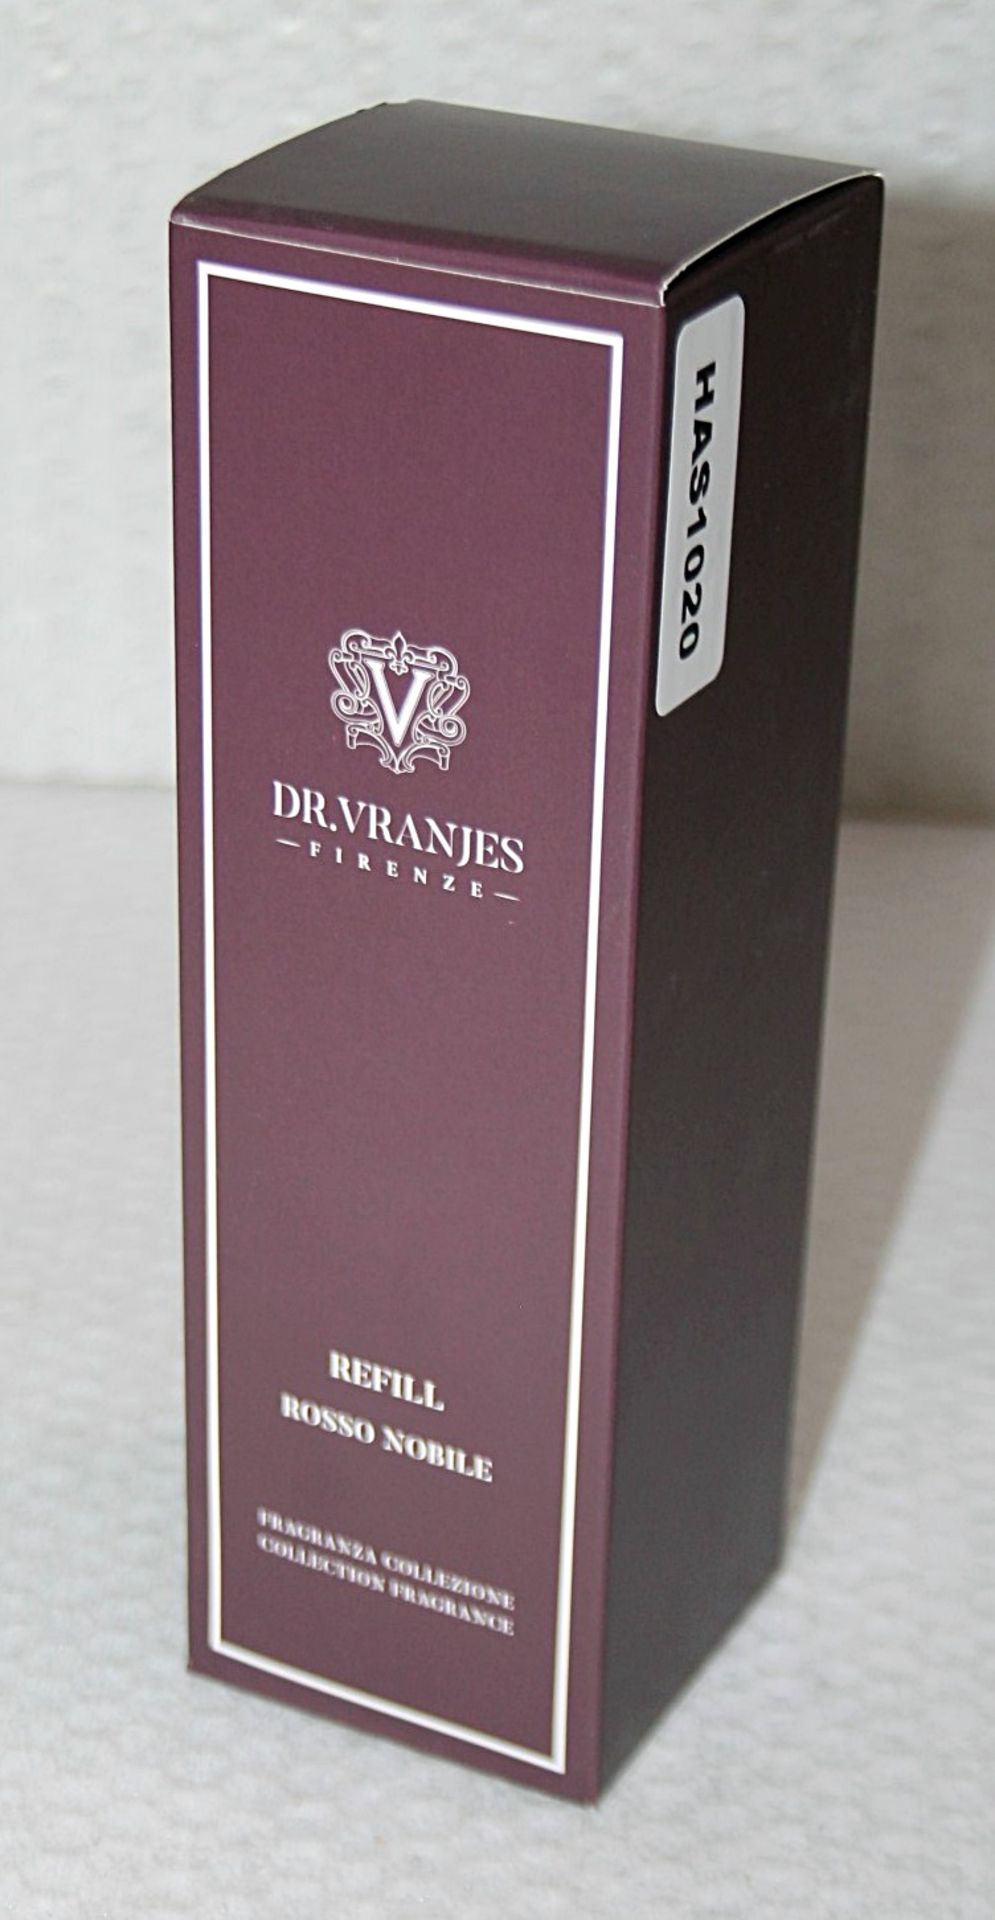 1 x DR. VRANJES FIRENZE 'Rosso Nobile' Fragrance Refill (500ml) - Original Price £71.95 - Unused - Image 2 of 7